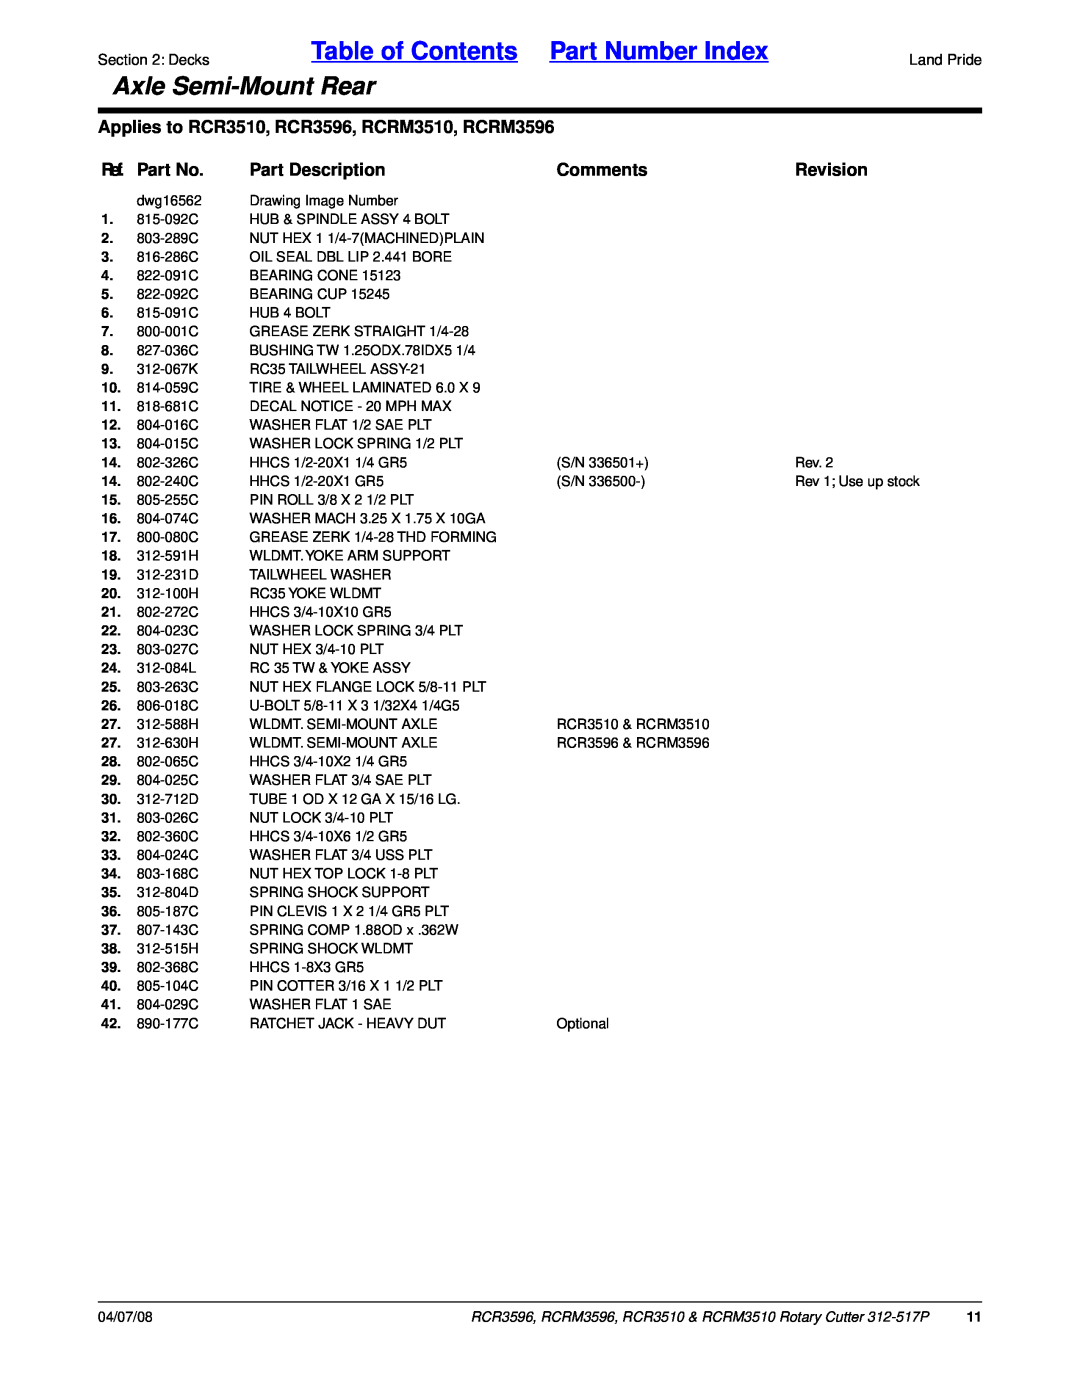 Land Pride RCR3596 Table of Contents Part Number Index, Axle Semi-MountRear, Ref. Part No, Part Description, Comments 